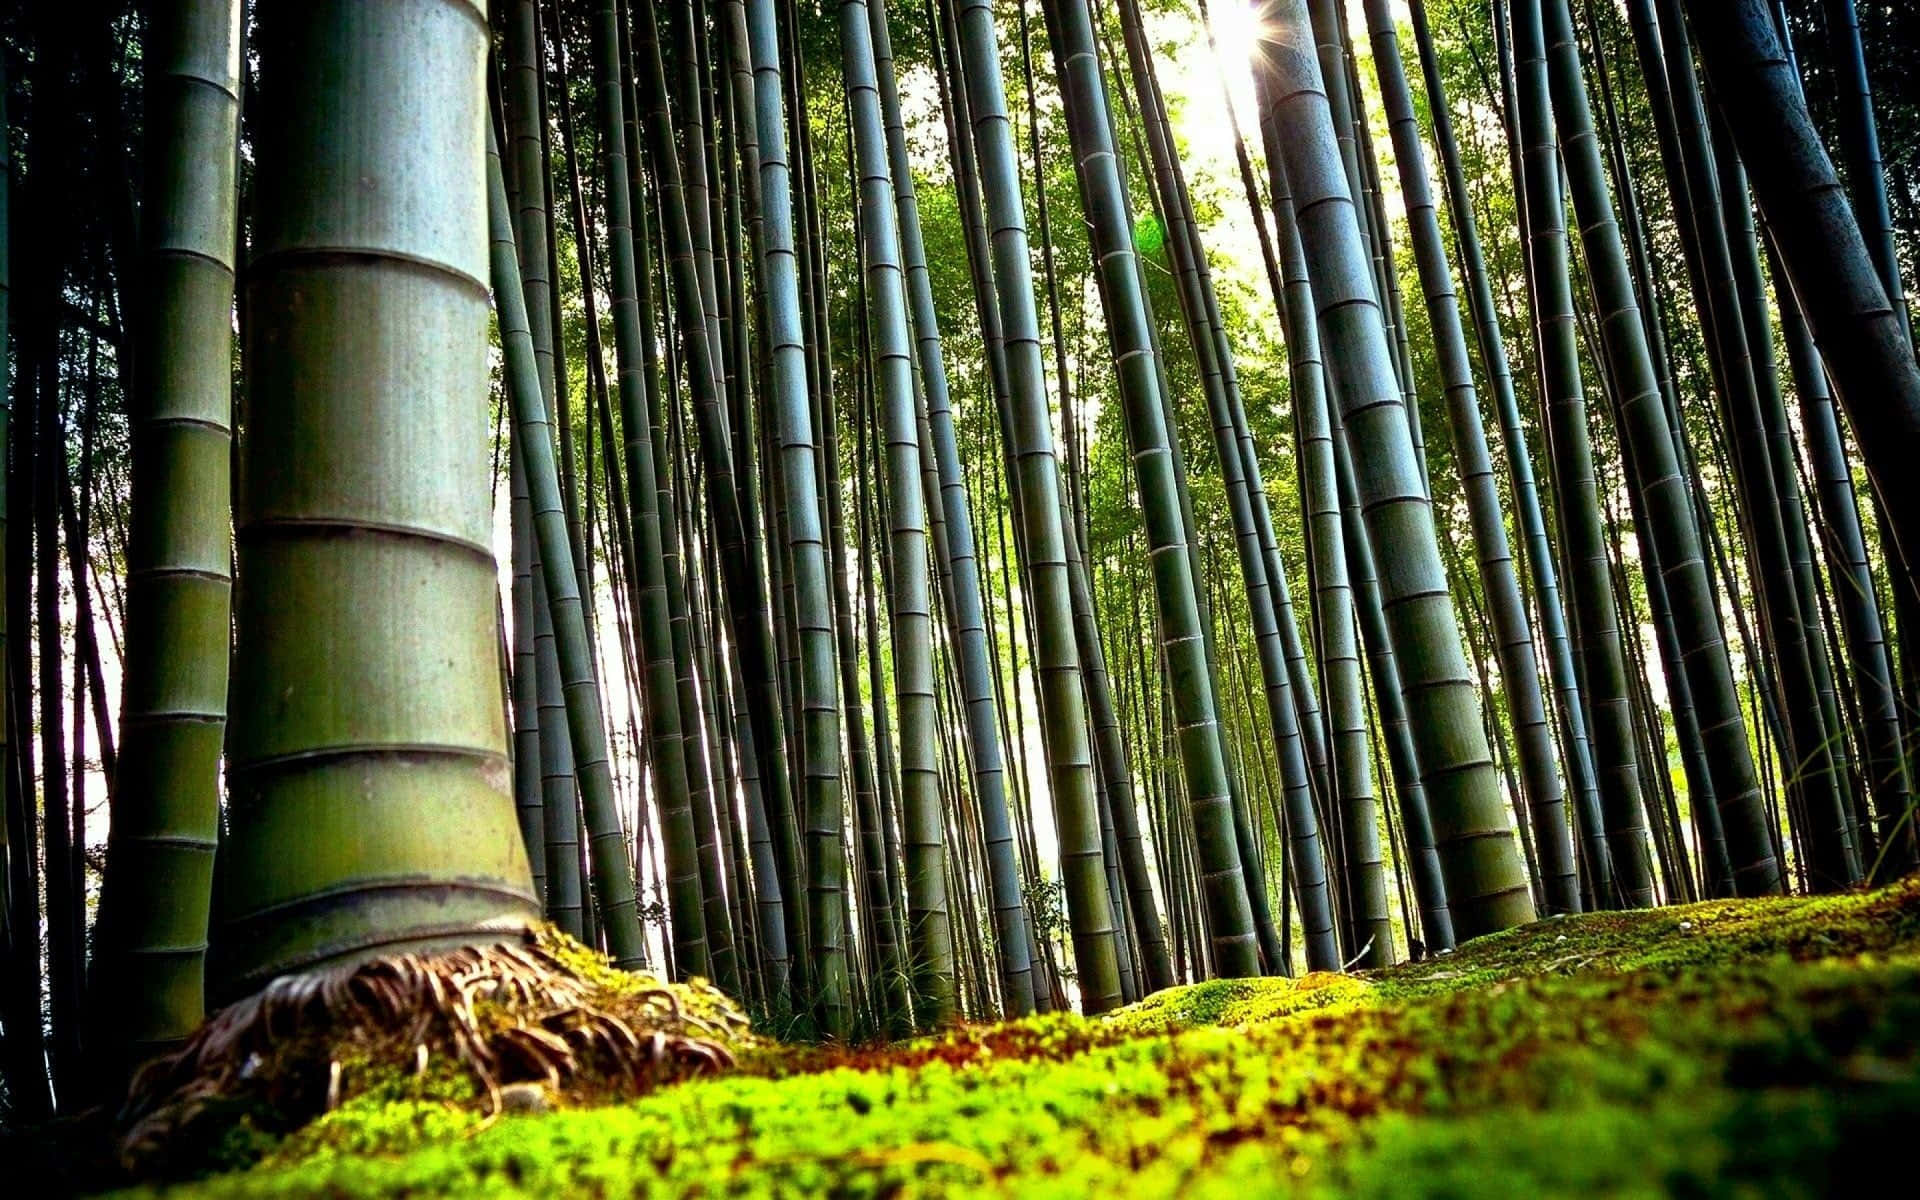 Unbosque De Bambú Verde Se Alza Alto En El Bosque. Fondo de pantalla